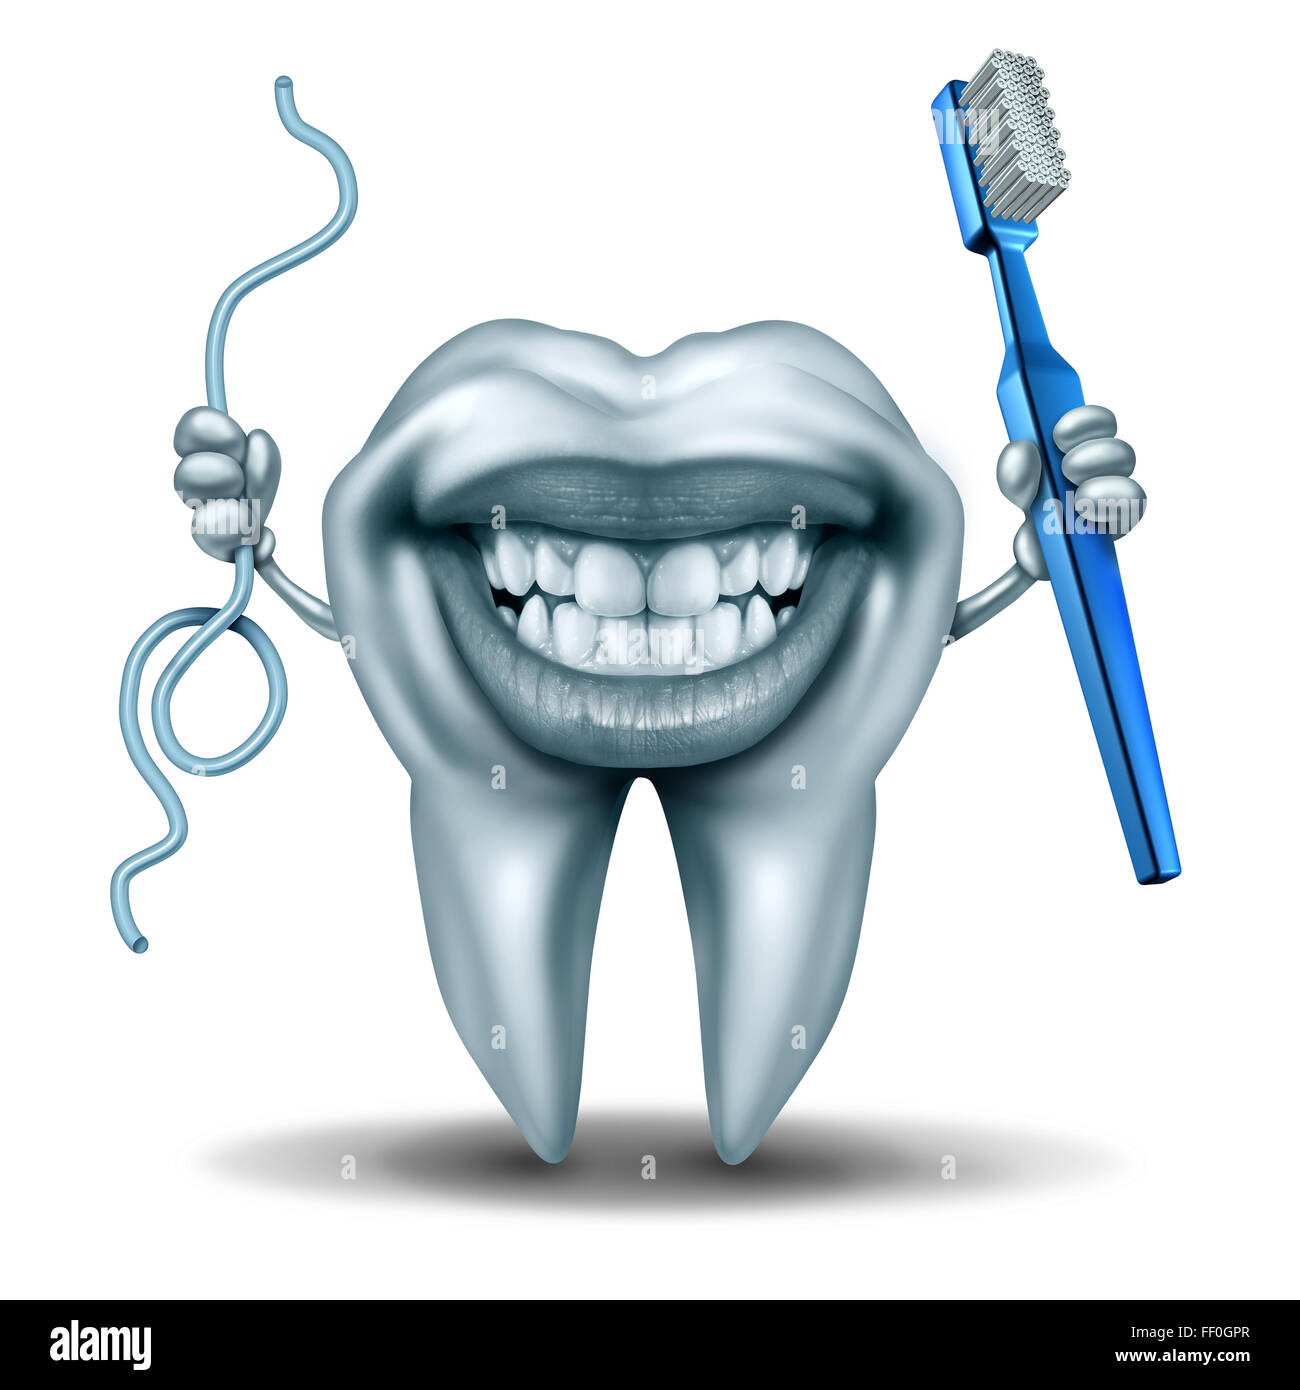 Carácter de limpieza de dientes sujetando un cepillo de dientes y una  cadena de hilo dental con una amplia sonrisa en la risa molar humano como  un símbolo de higiene dental y